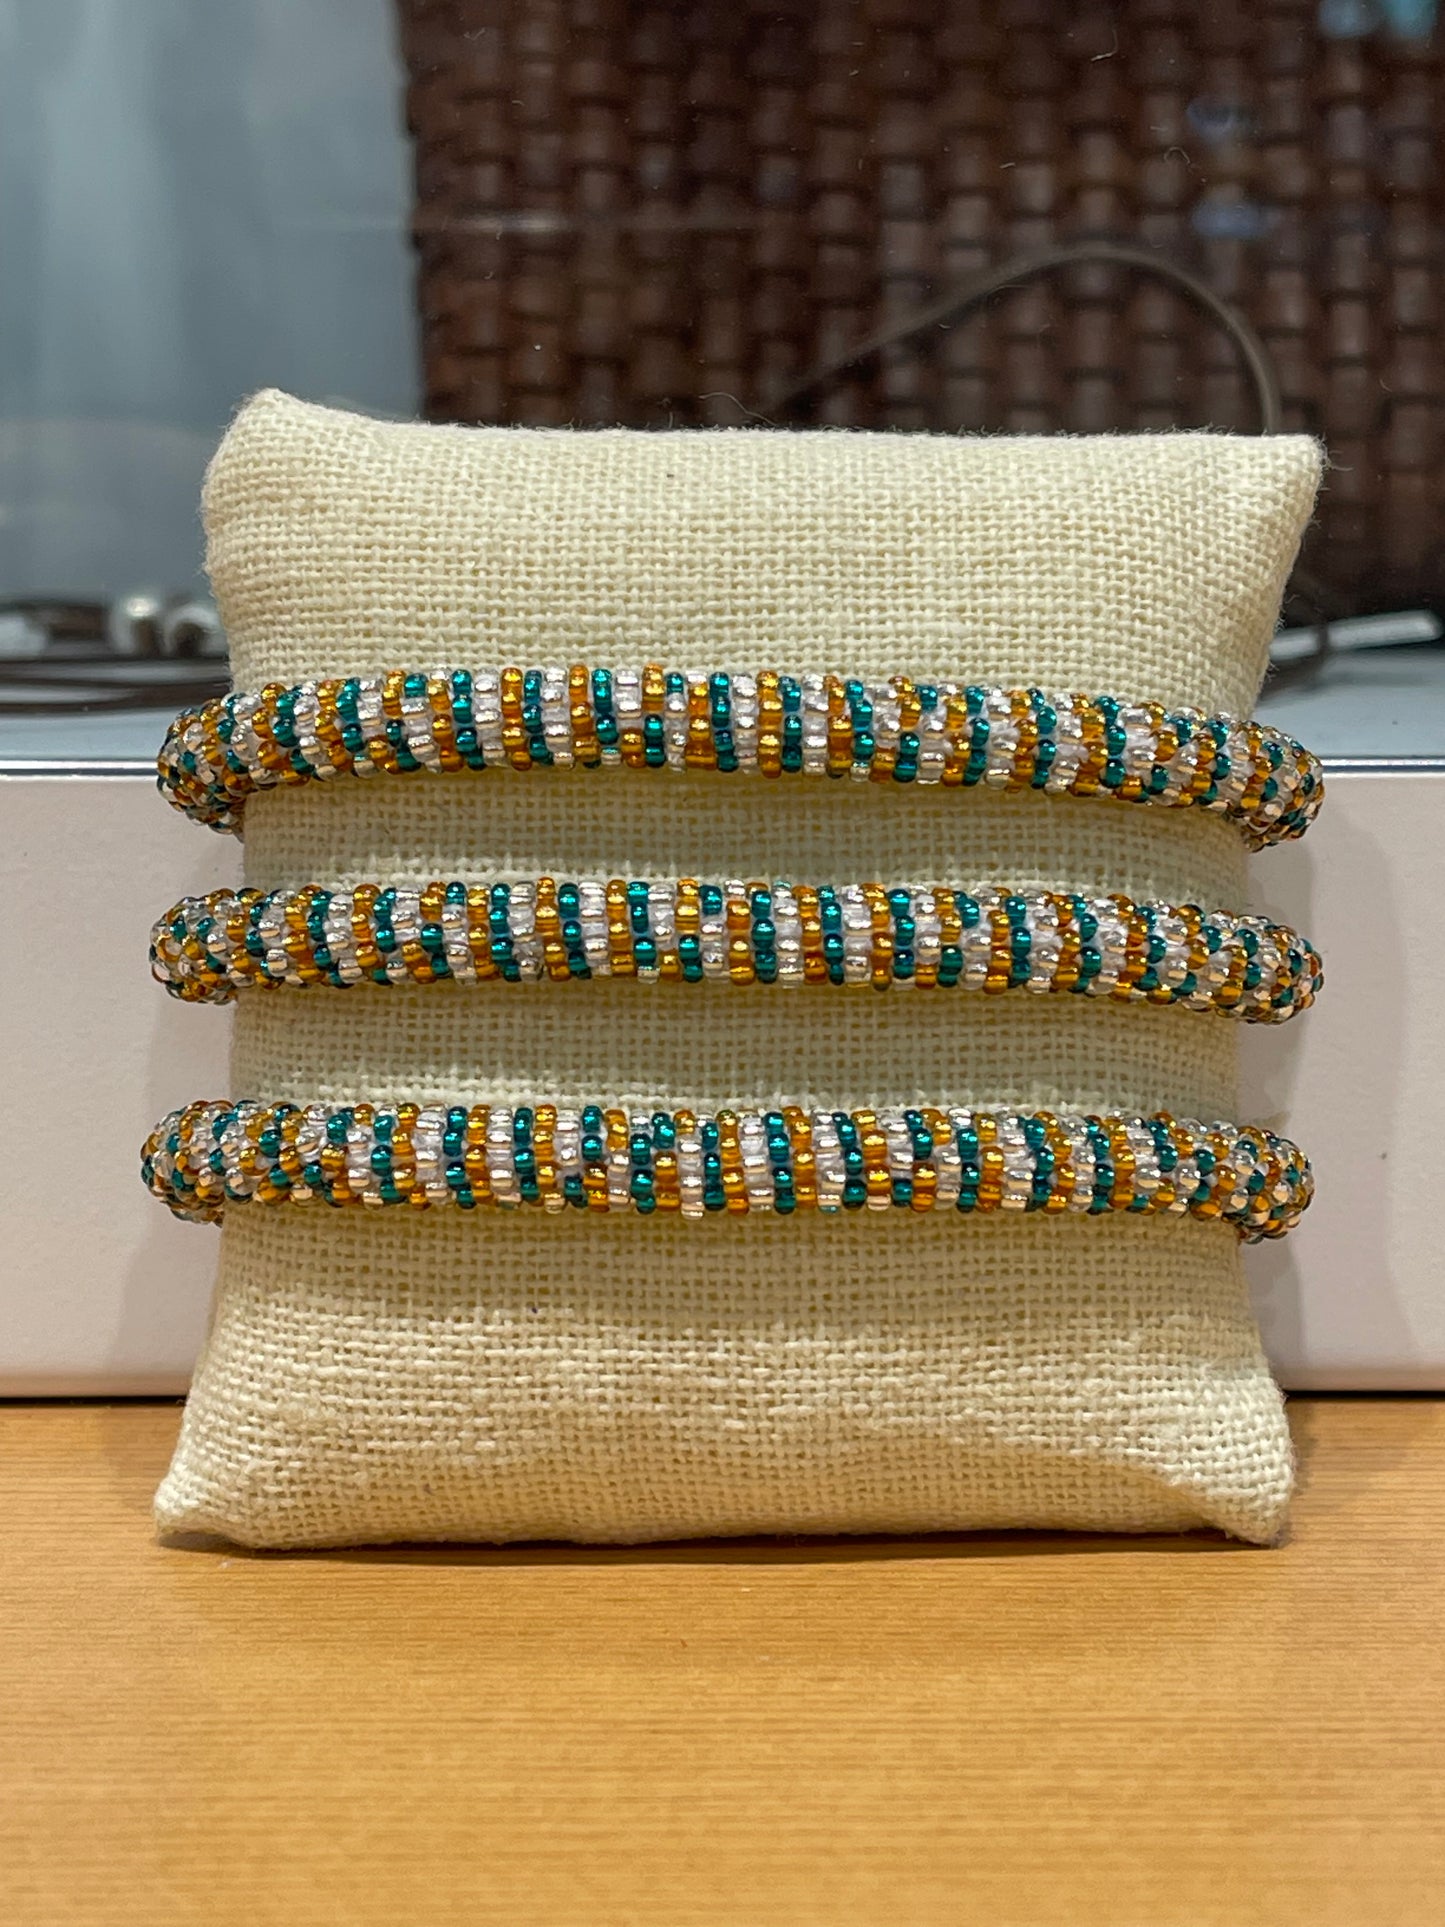 Handmade crochet bracelets